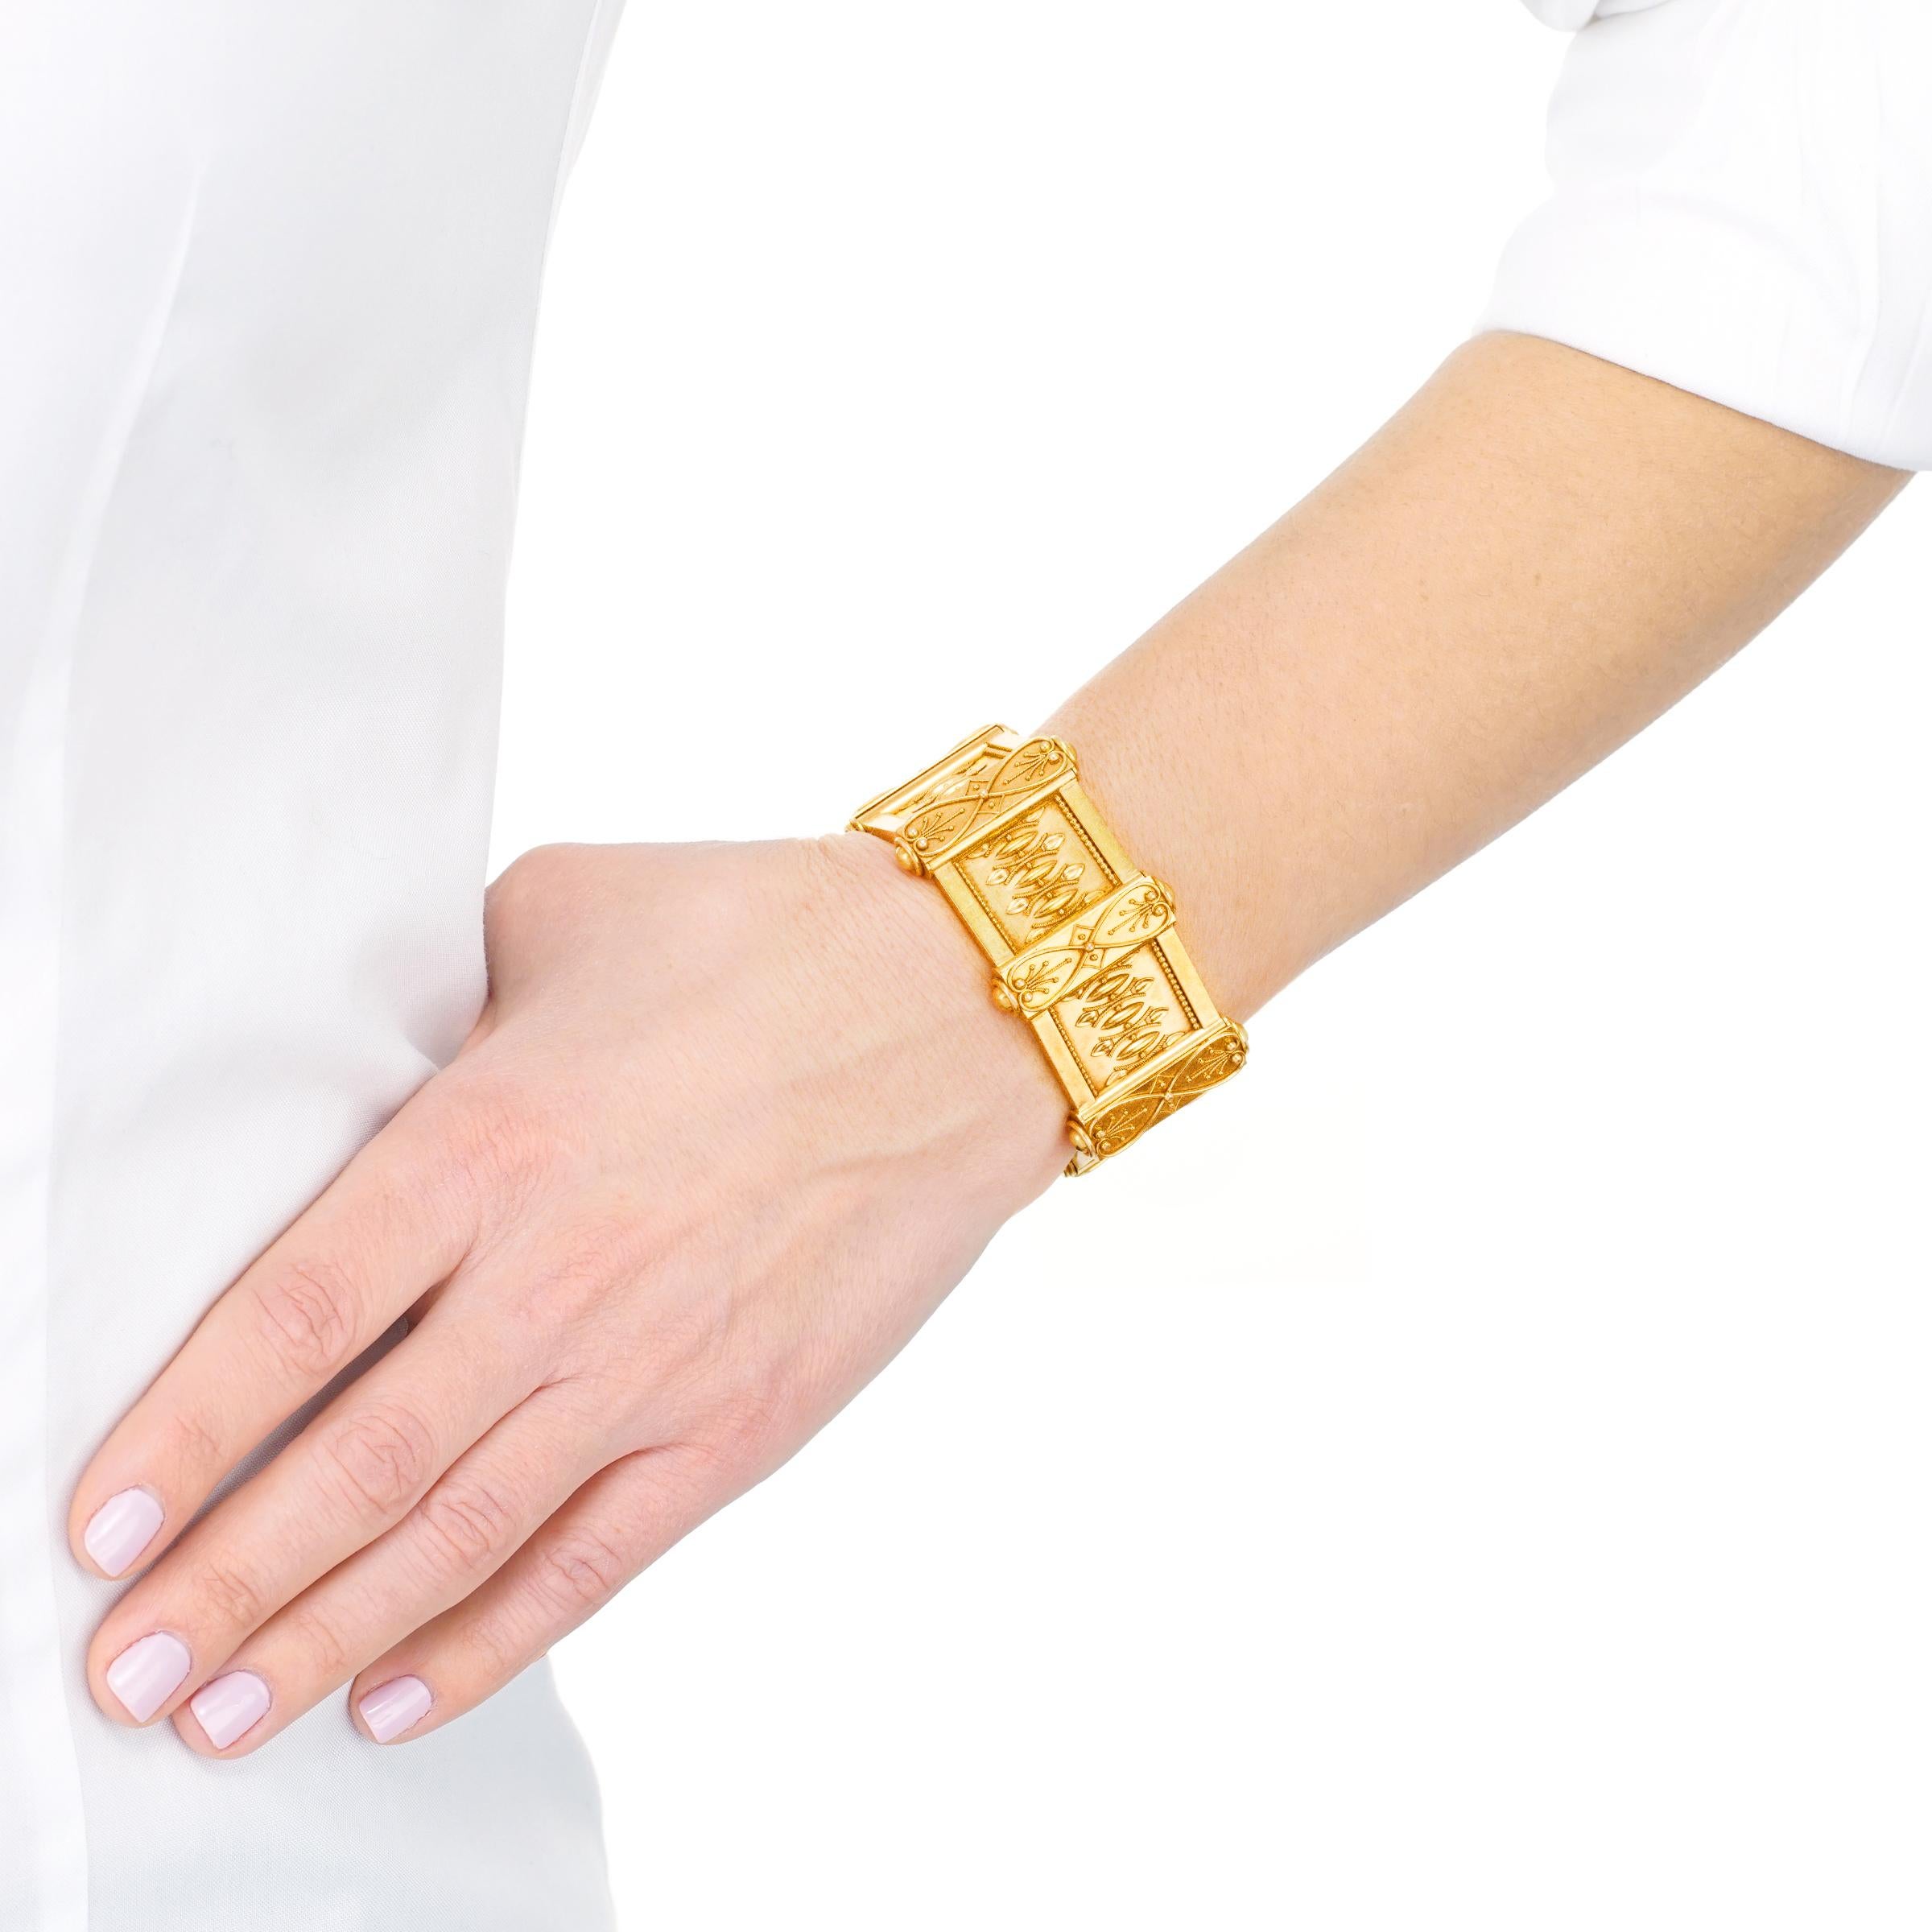 Women's Antique Renaissance Revival Gold Bracelet